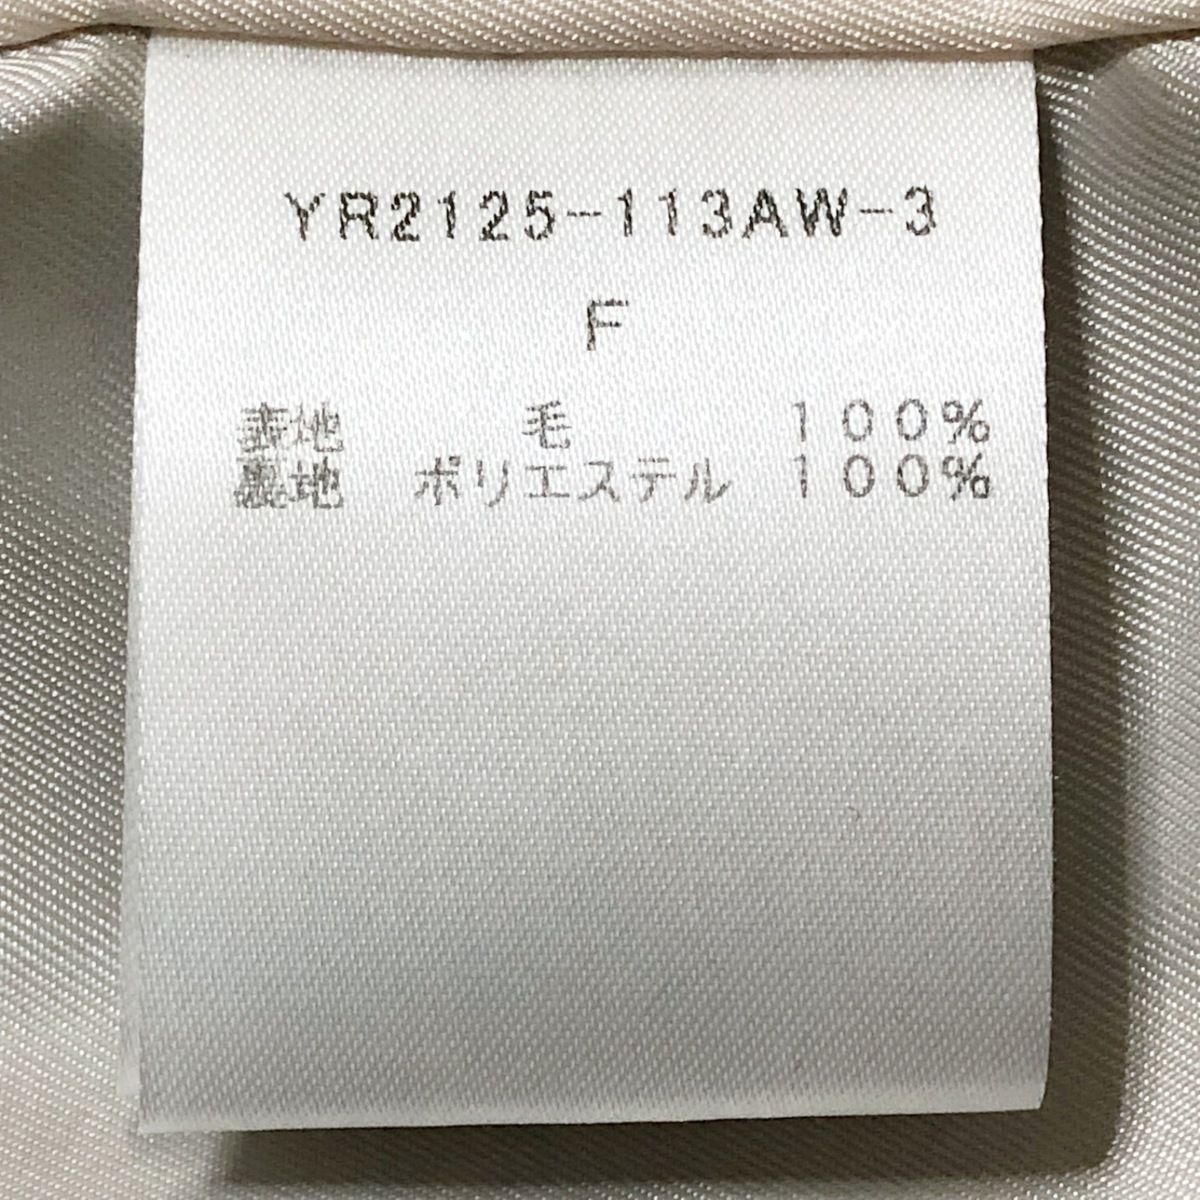 yori(ヨリ) コート サイズF レディース - ダークネイビー 長袖/冬